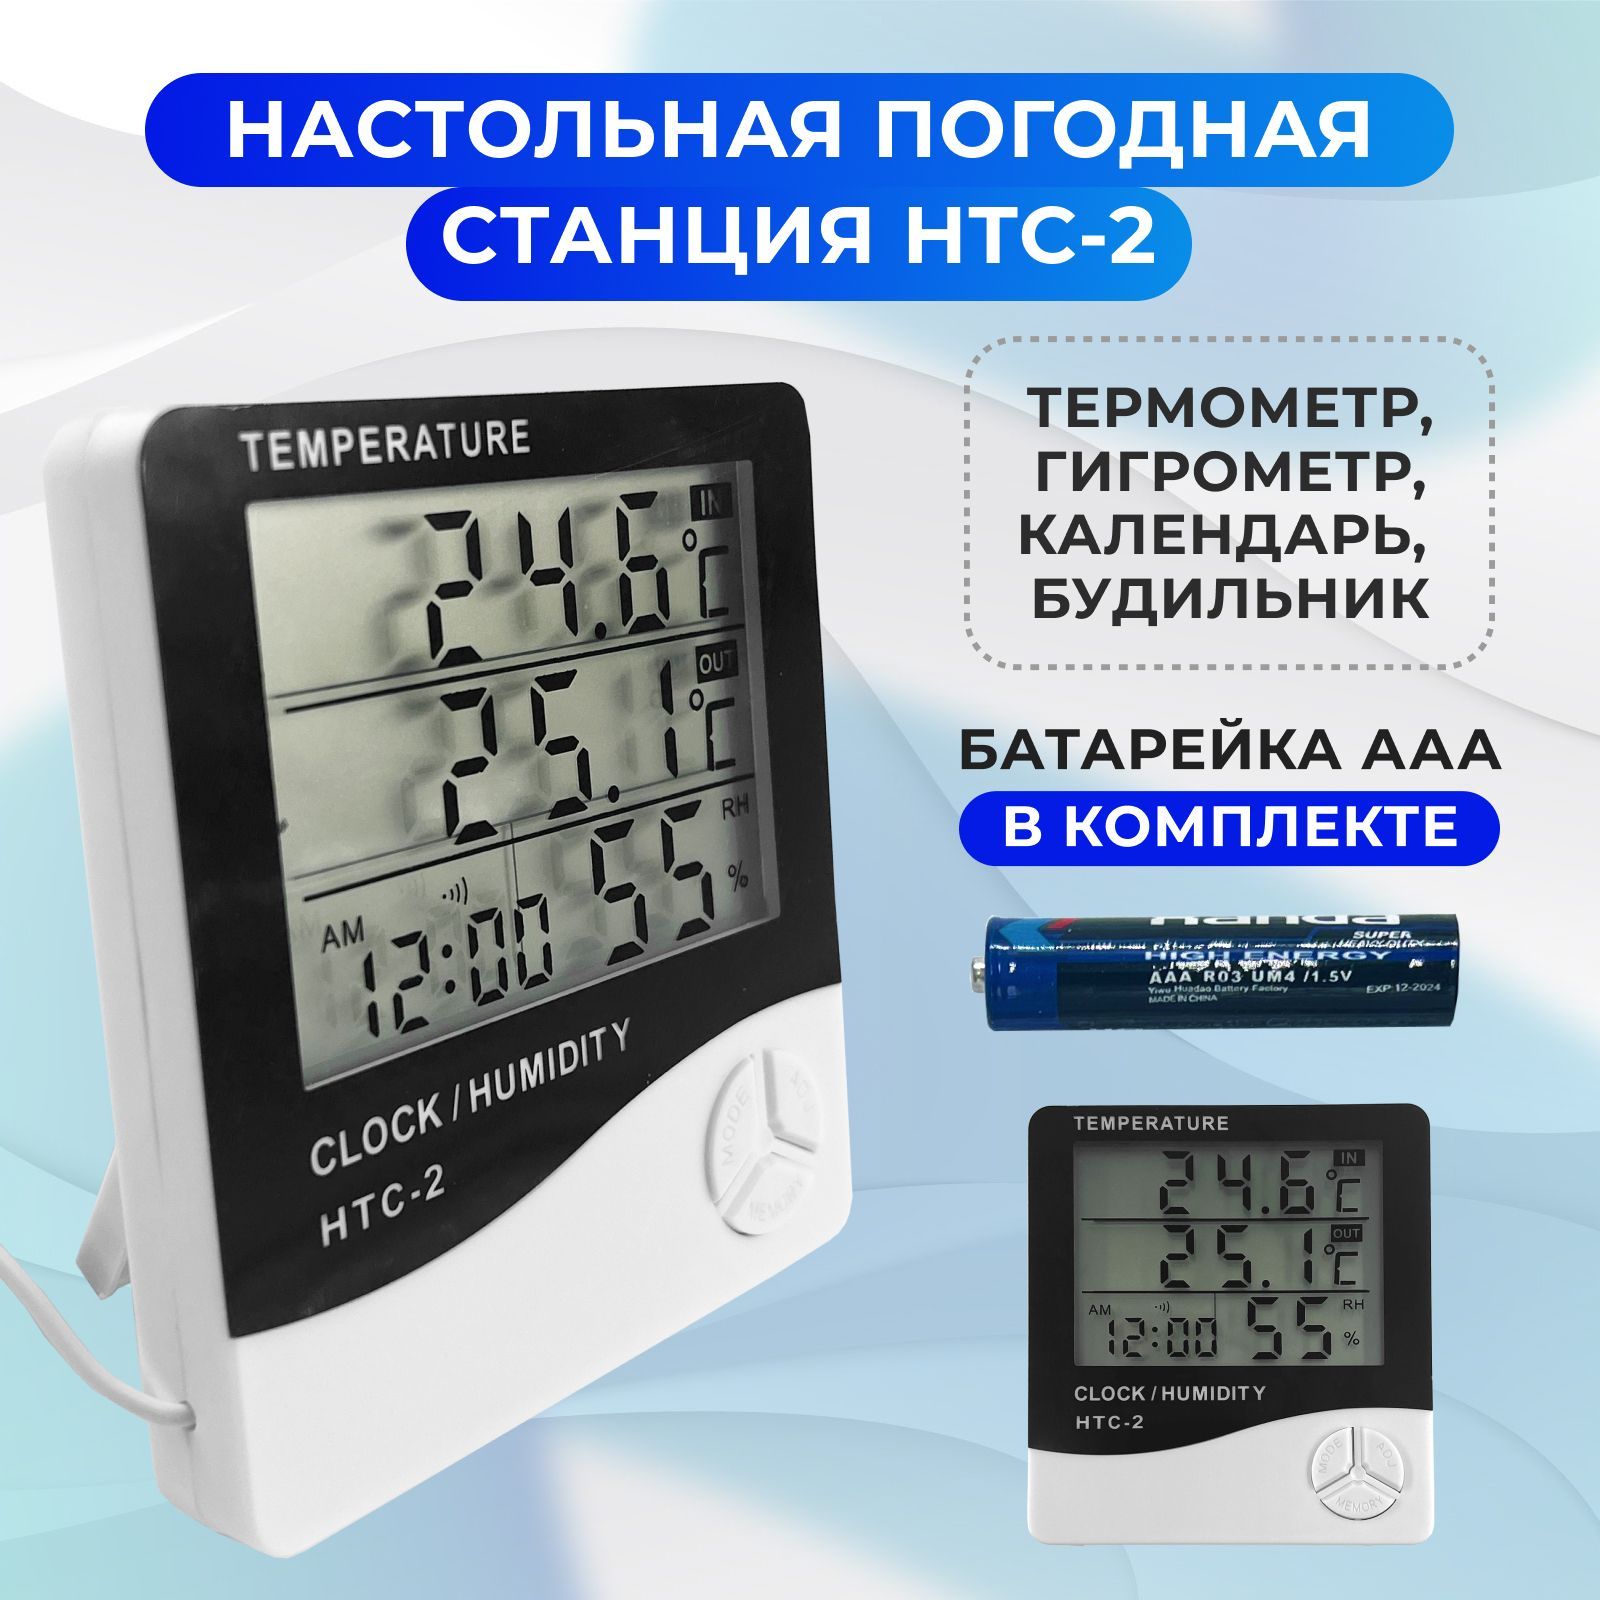 Домашняяметеостанция,настольнаяпогоднаястанциясизмерениемтемпературывоздухавпомещенииинаулицеHTC-2.Комнатныйцифровойтермометрсдатчиком,электронныйгигрометр/термогигрометр.Часы.